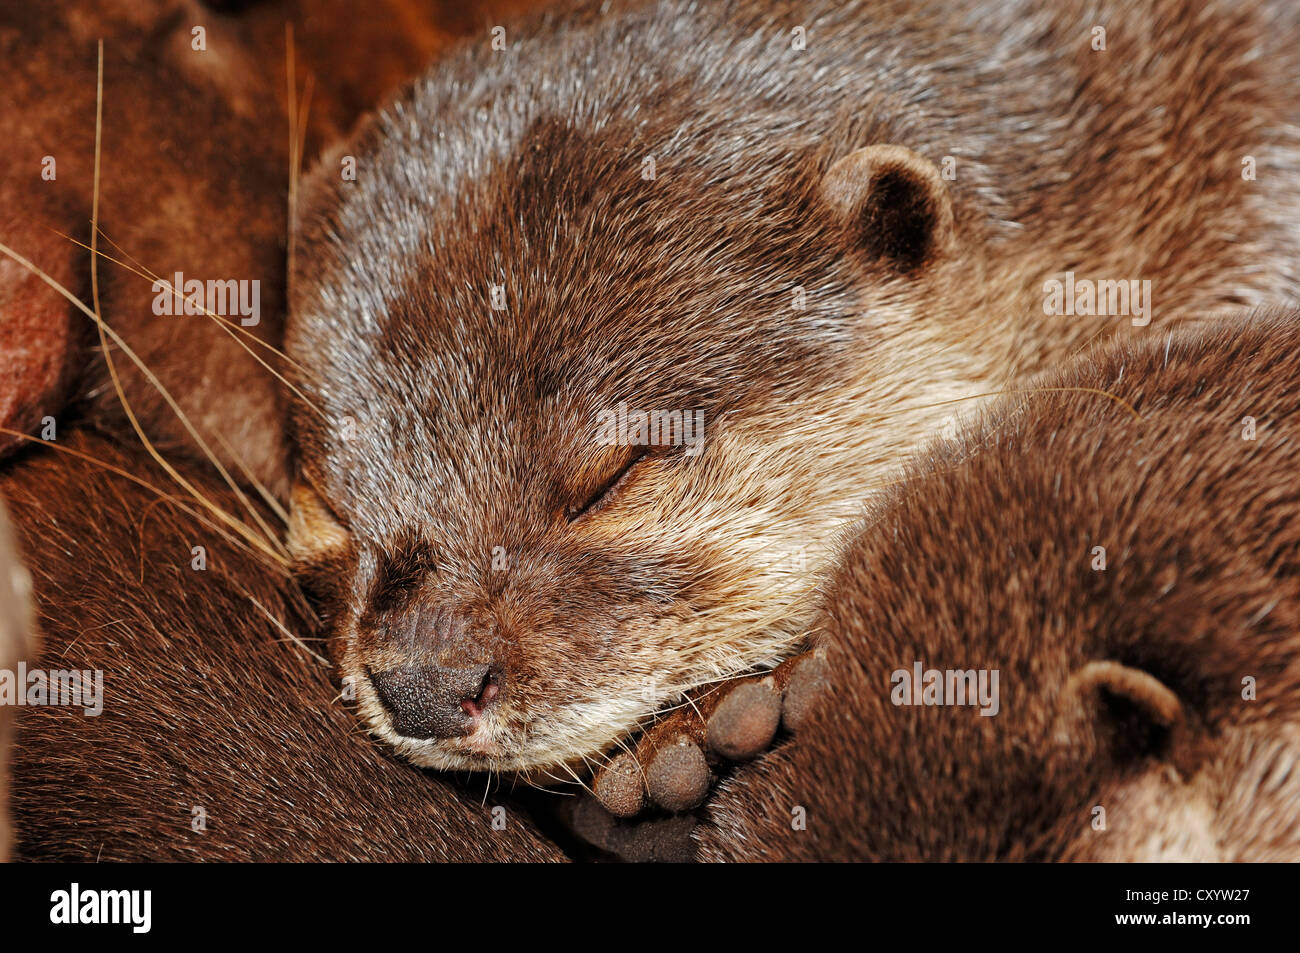 Orientalische kleine krallte Otter (Aonyx Cinerea, Amblonyx Cinerea), Porträt eines schlafenden Tieres, gefunden in Asien, gefangen Stockfoto